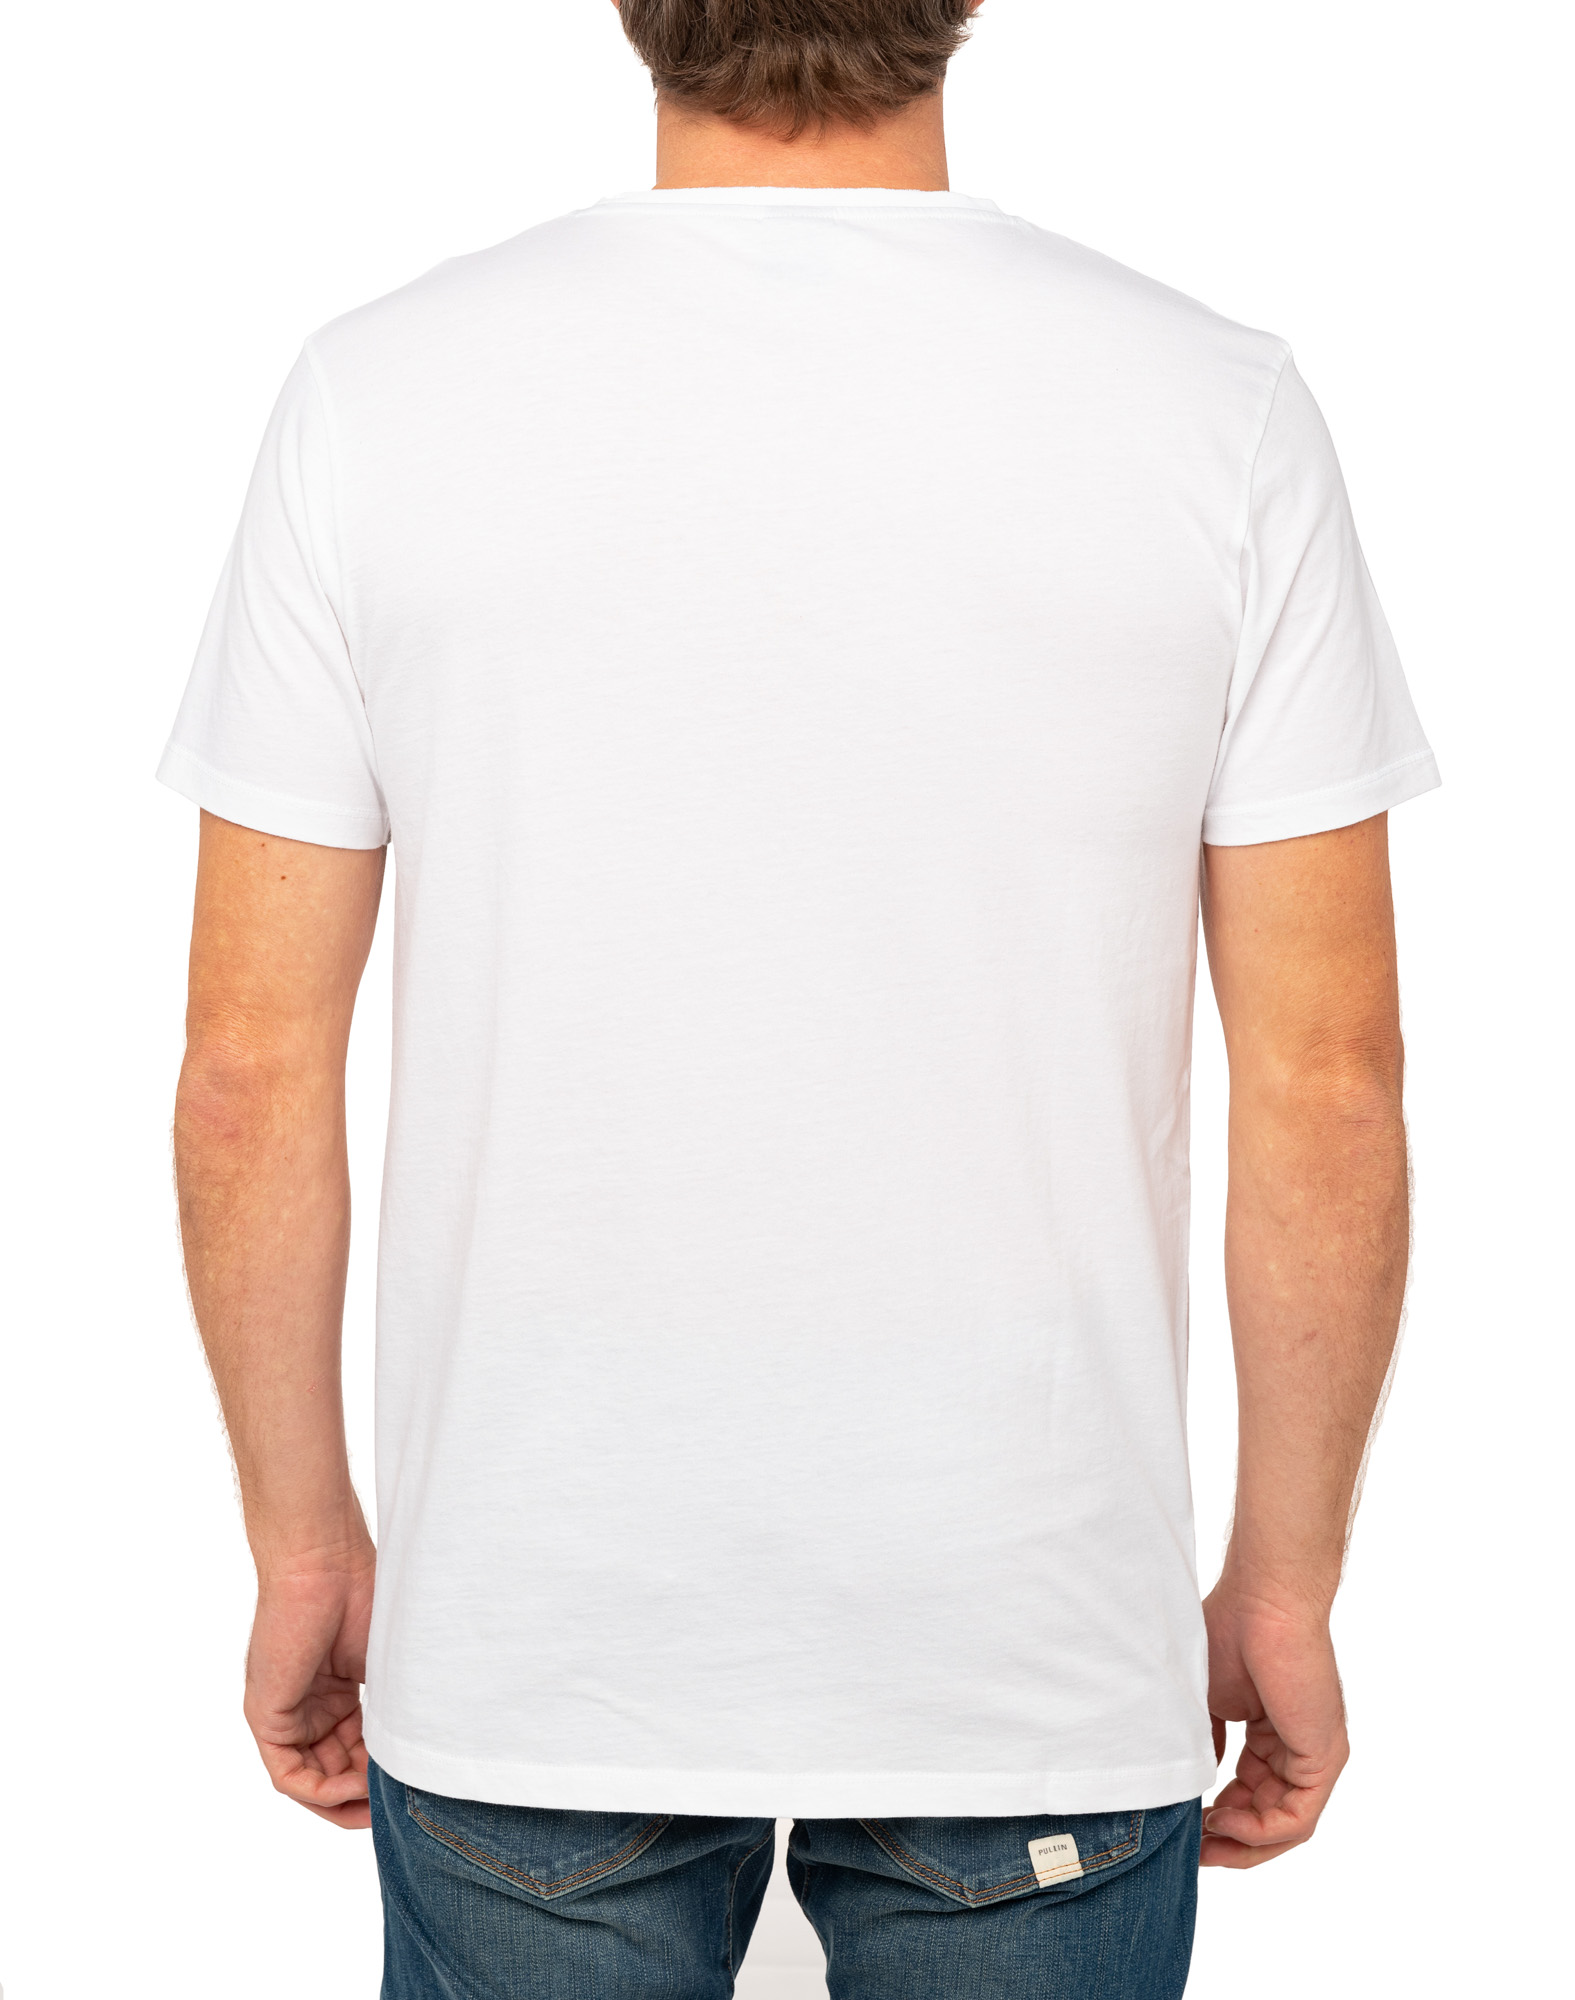 Men's t-shirt LINESURF